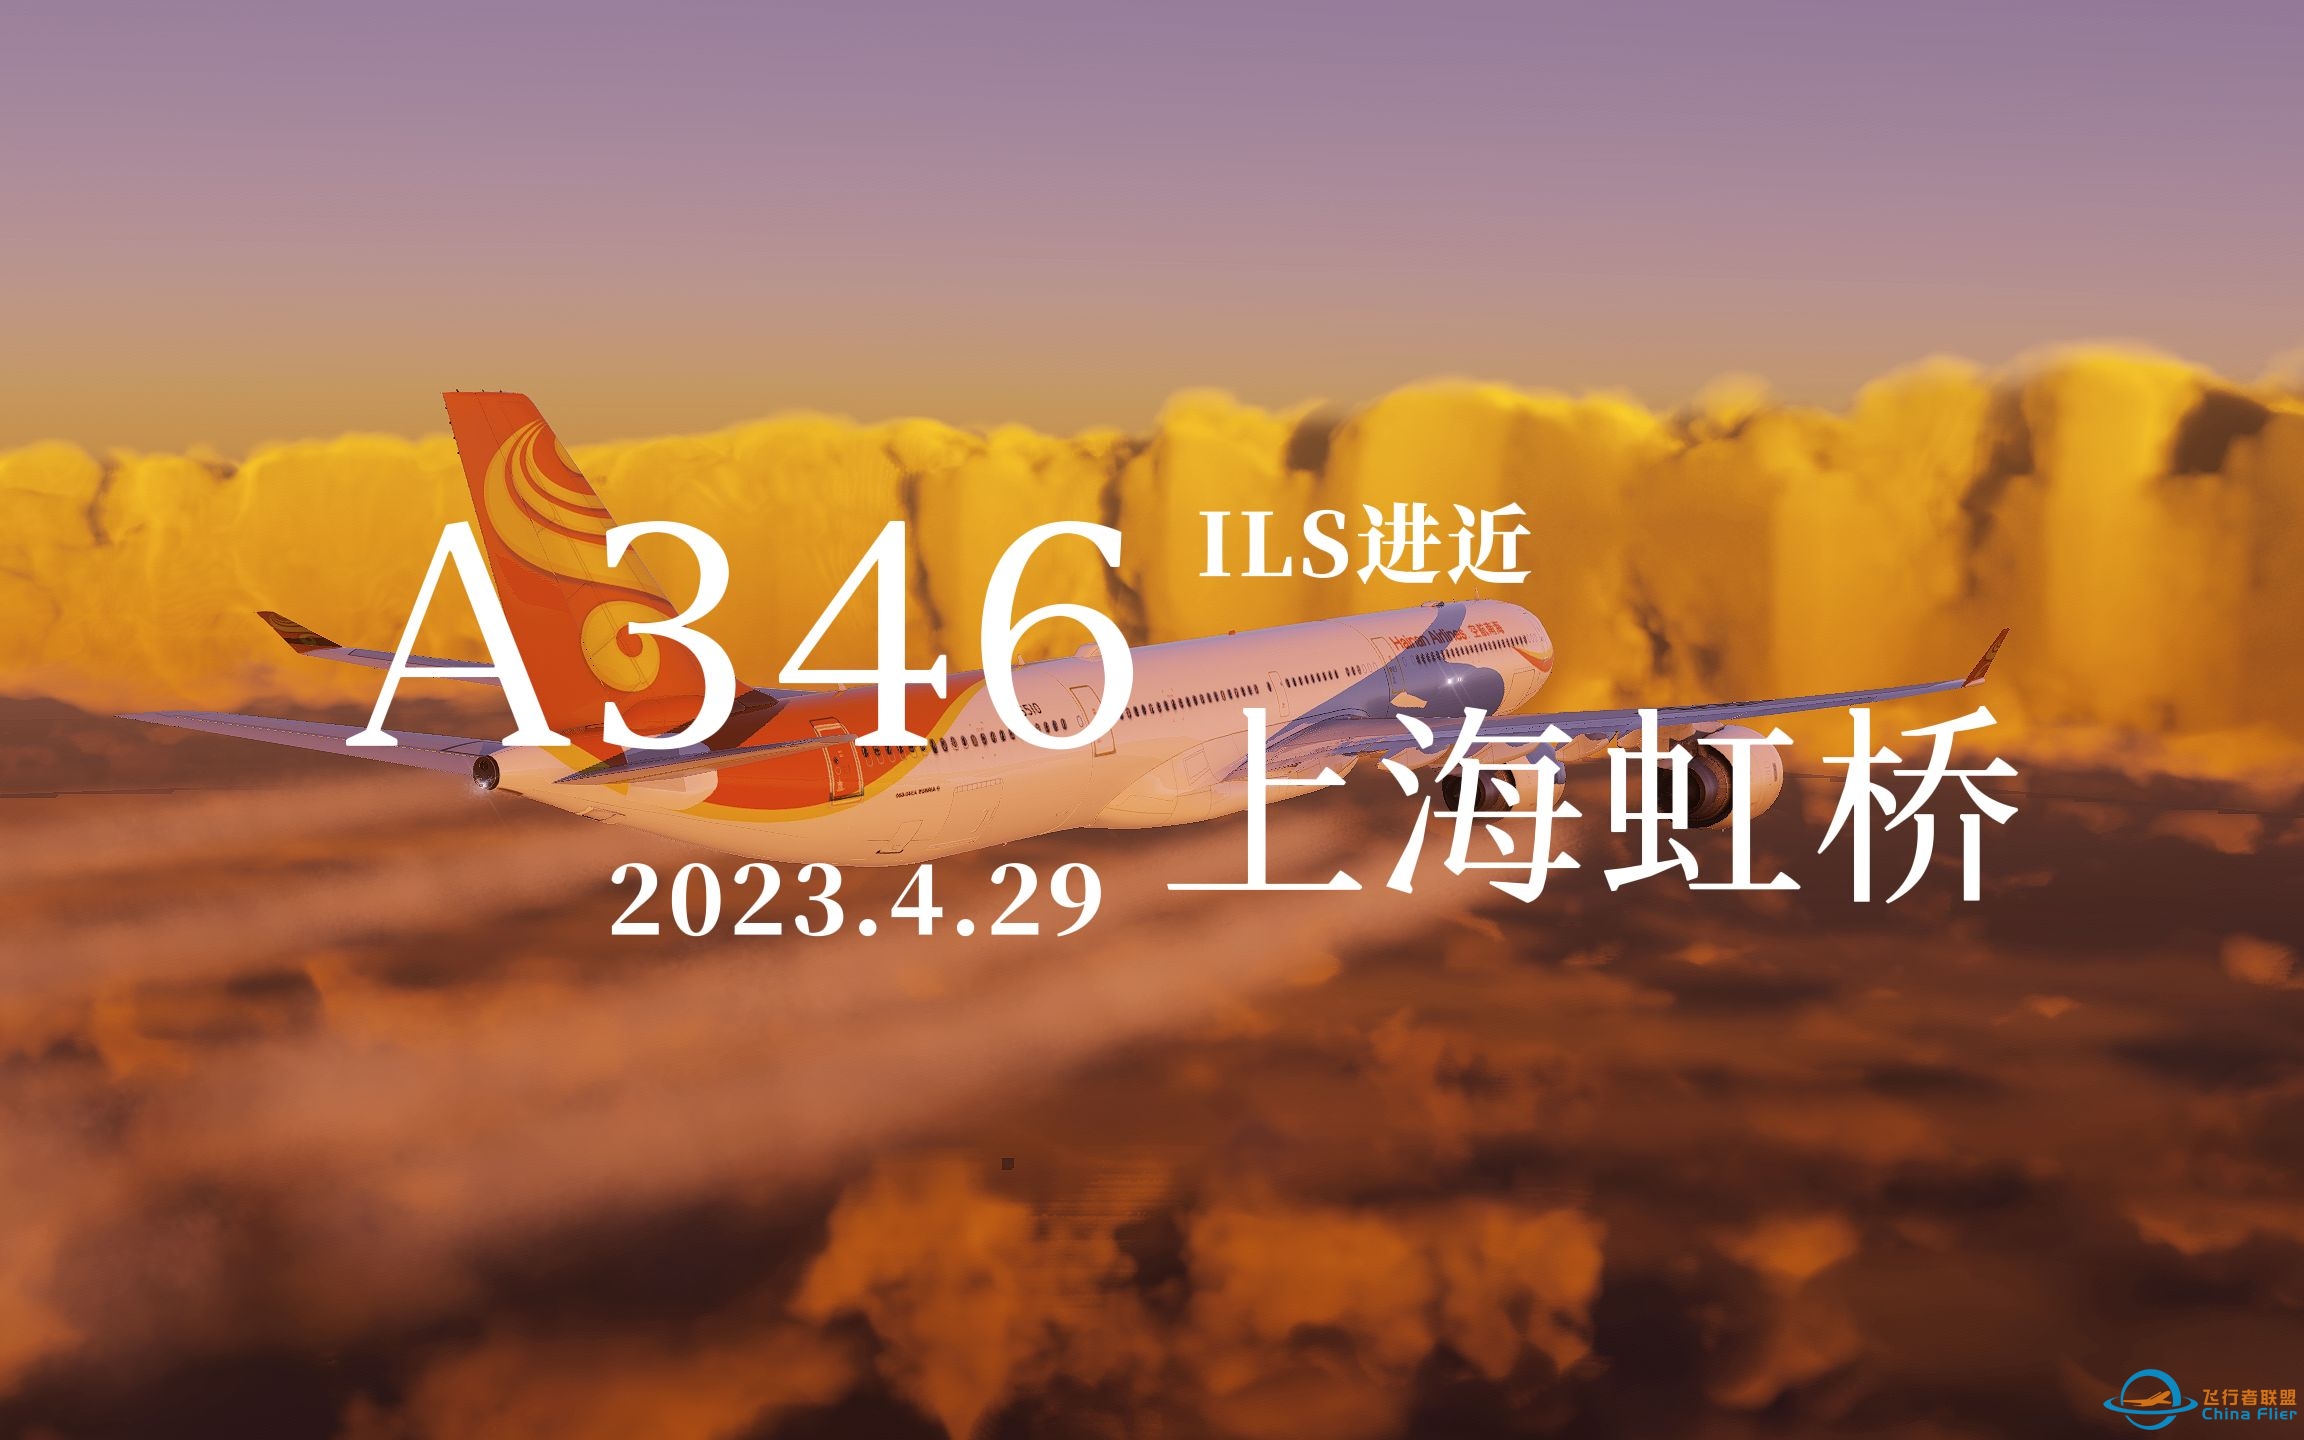 【Xplane12】Toliss A346落地上海虹桥36R-6869 